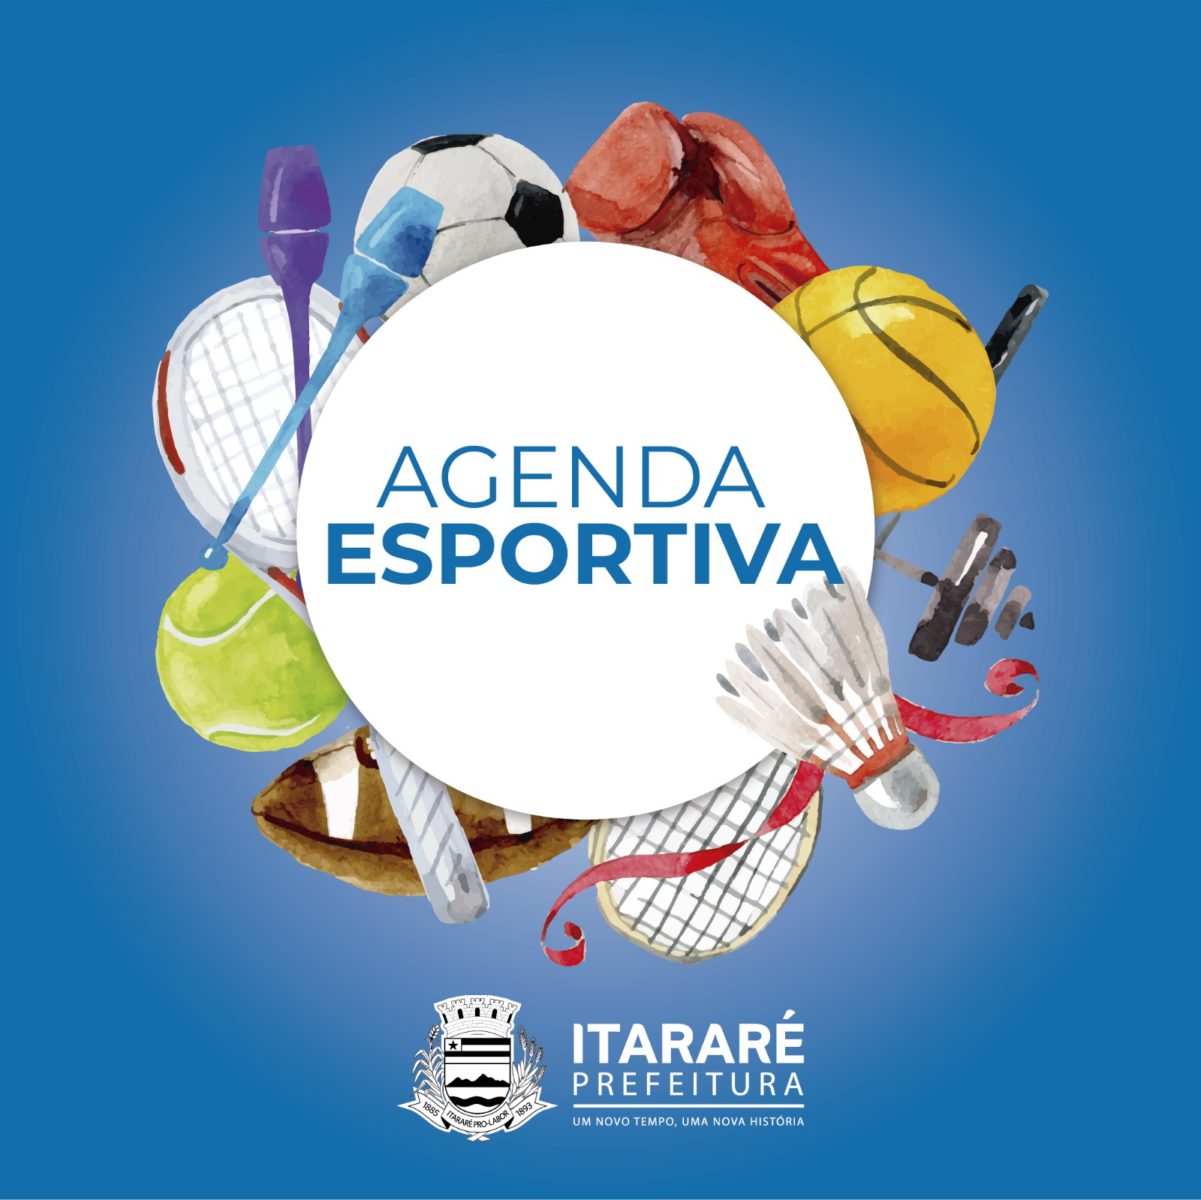 Agenda Esportiva: Final do Campeonato Rural acontece neste domingo (24) em Itararé (SP)